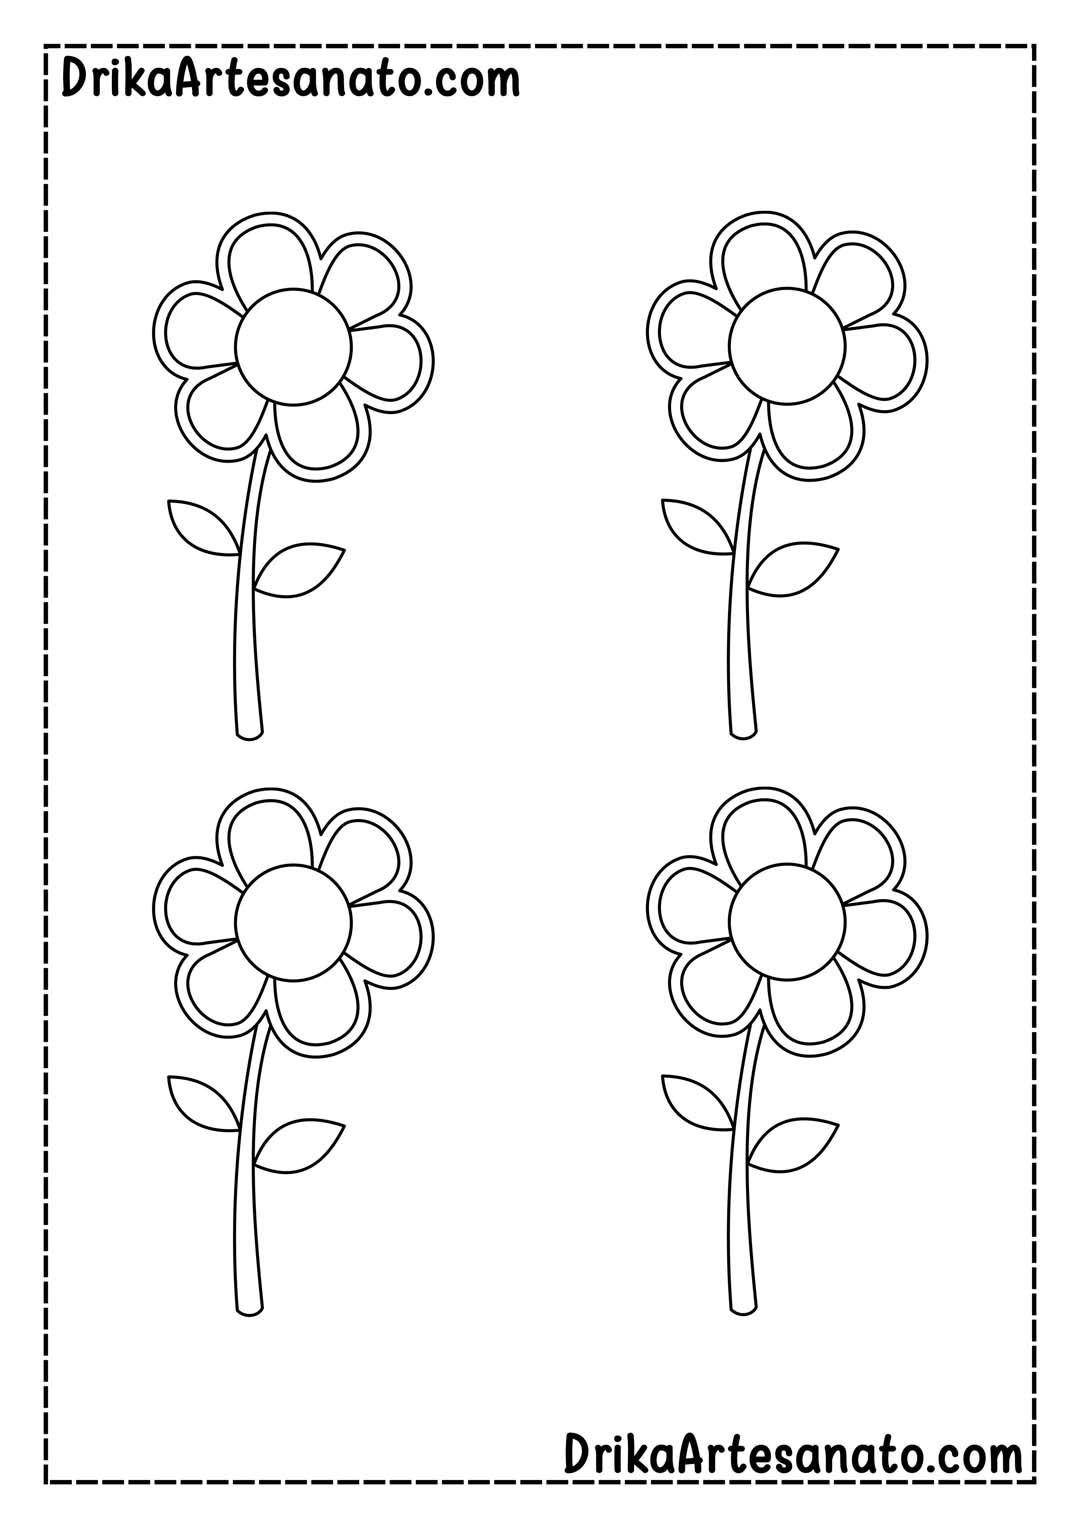 Molde de Flor com 6 Pétalas em Tamanho Médio